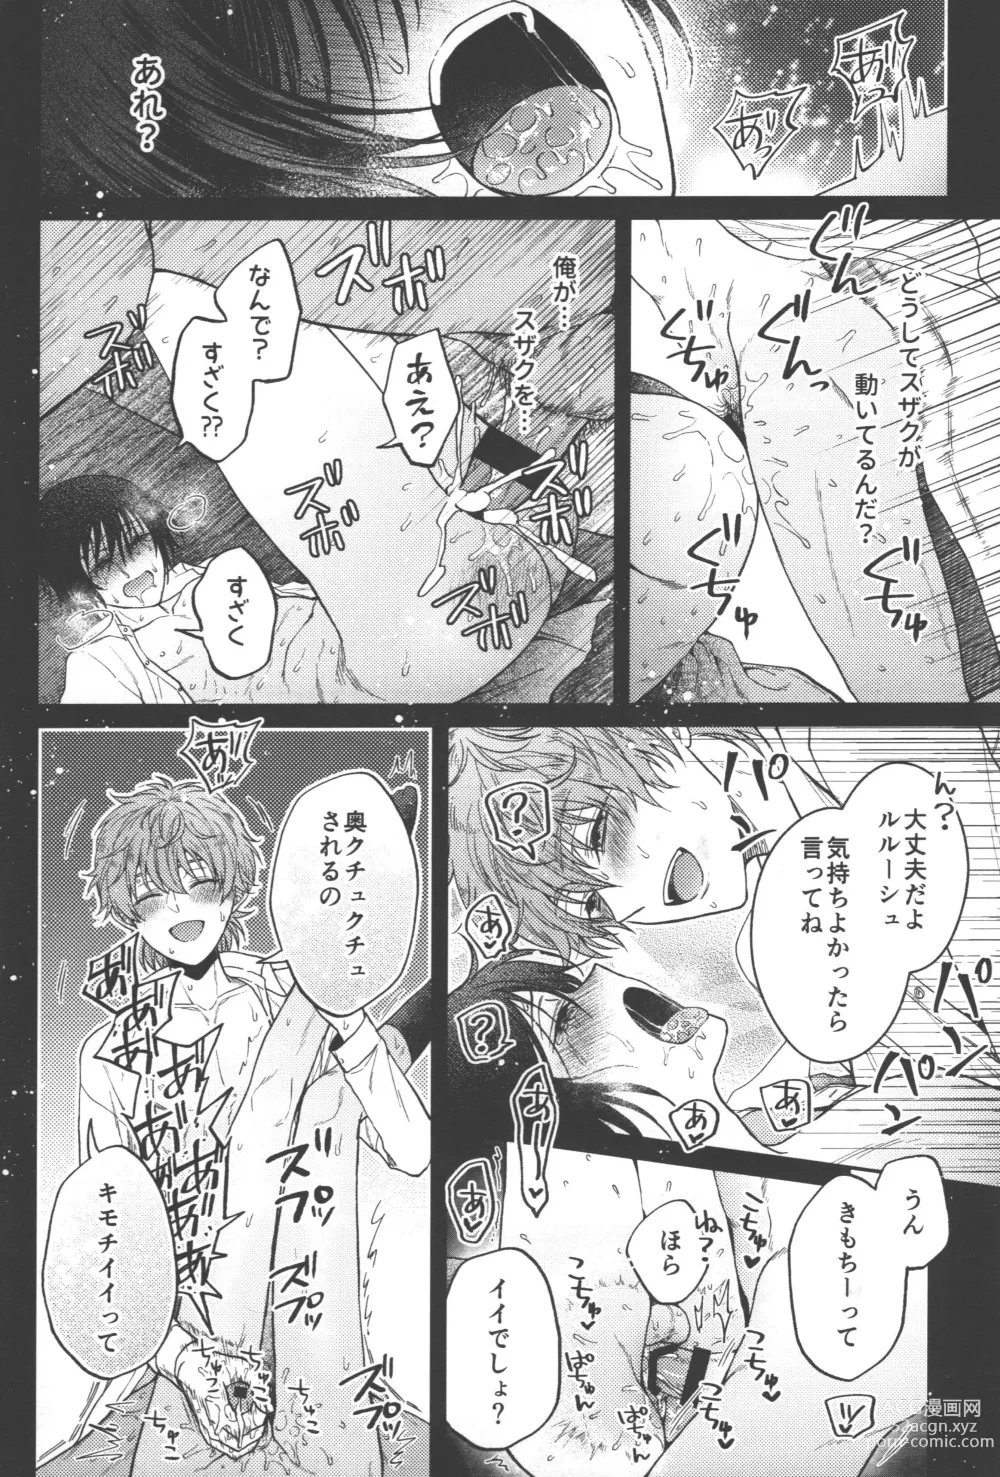 Page 49 of doujinshi Omae wa Damatte Soko ni Nete Iro!